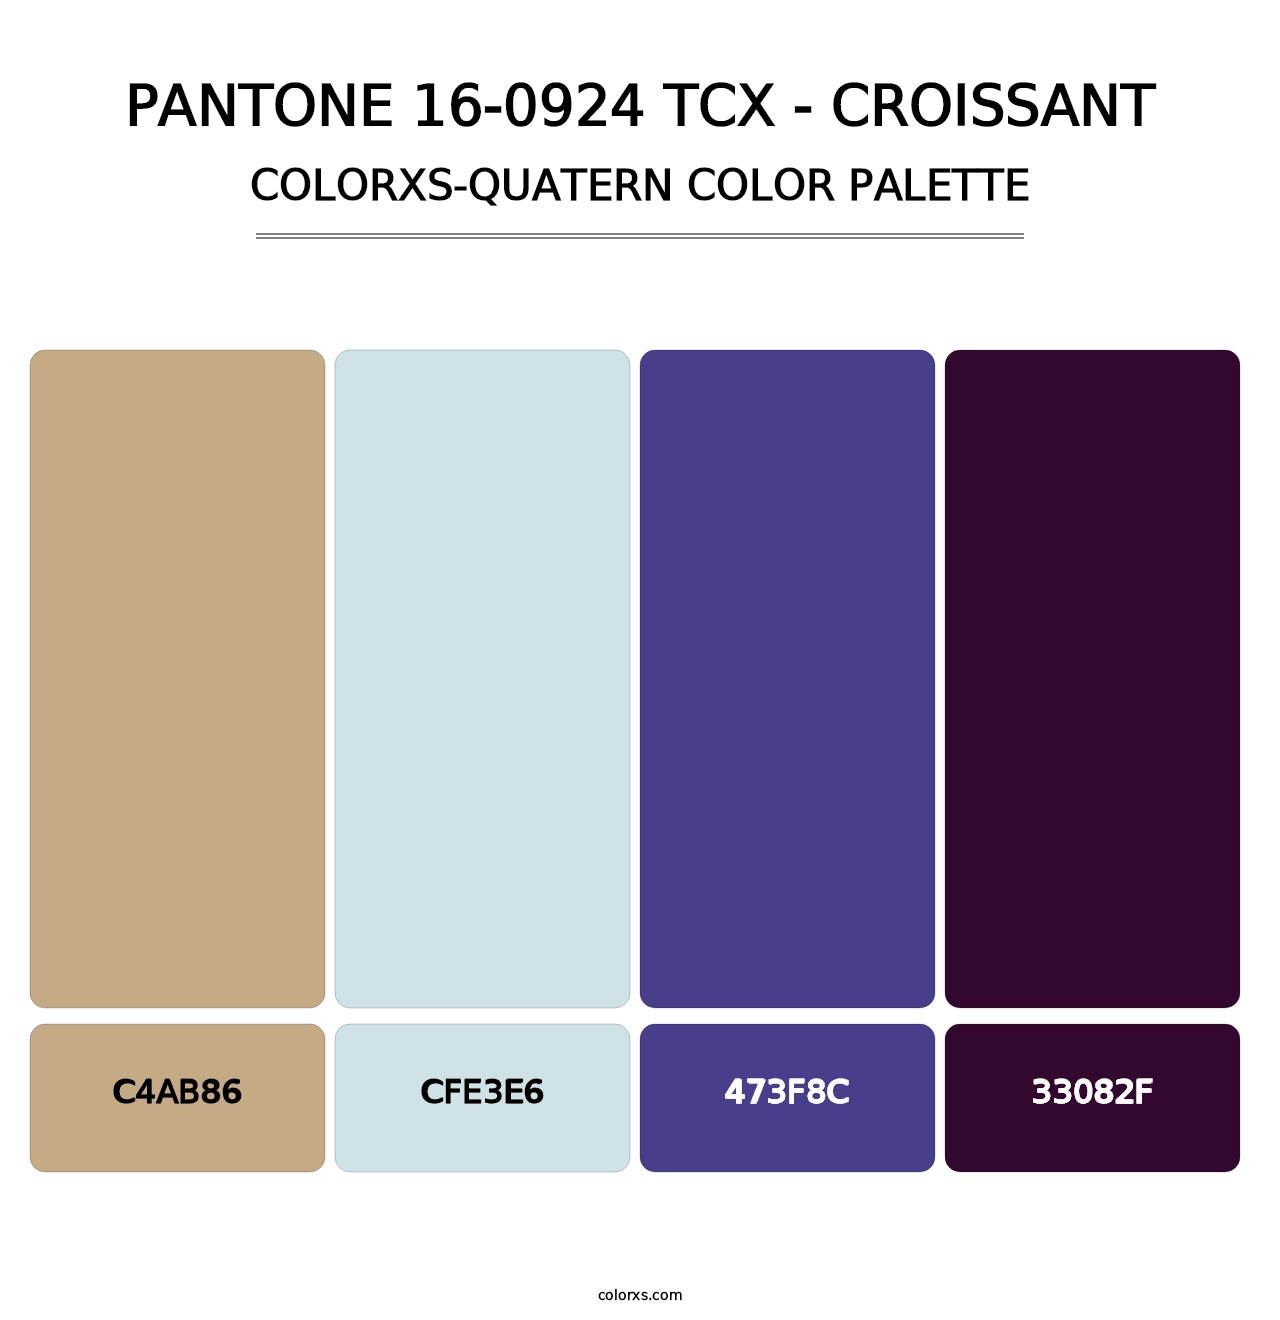 PANTONE 16-0924 TCX - Croissant - Colorxs Quatern Palette